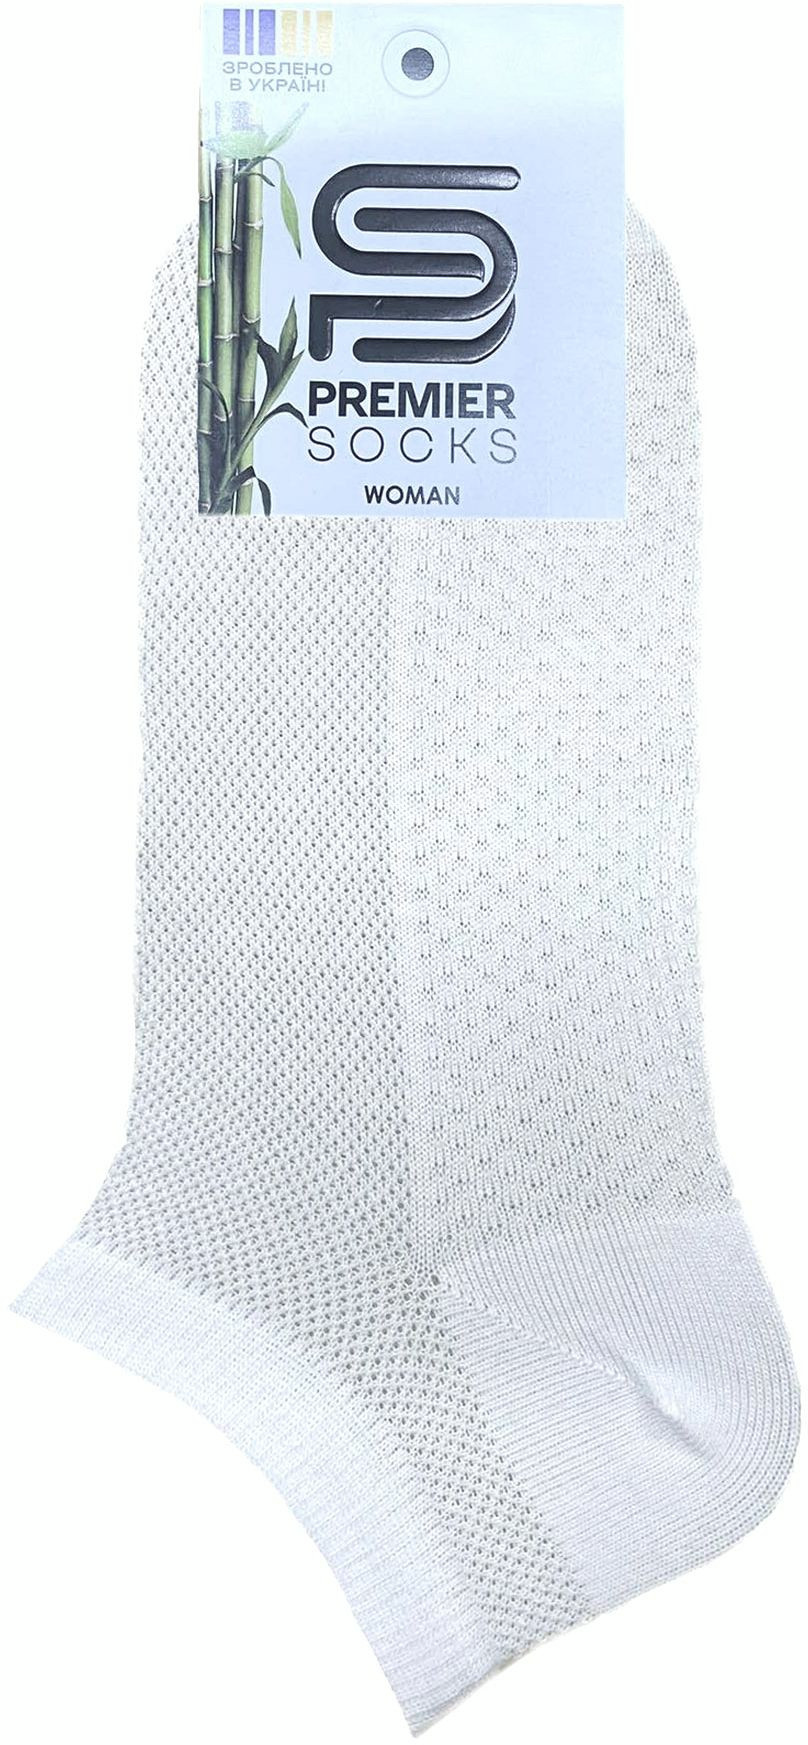 Носки женские Premier Socks 36-40 1 пара белые (4820163318790) фото 2